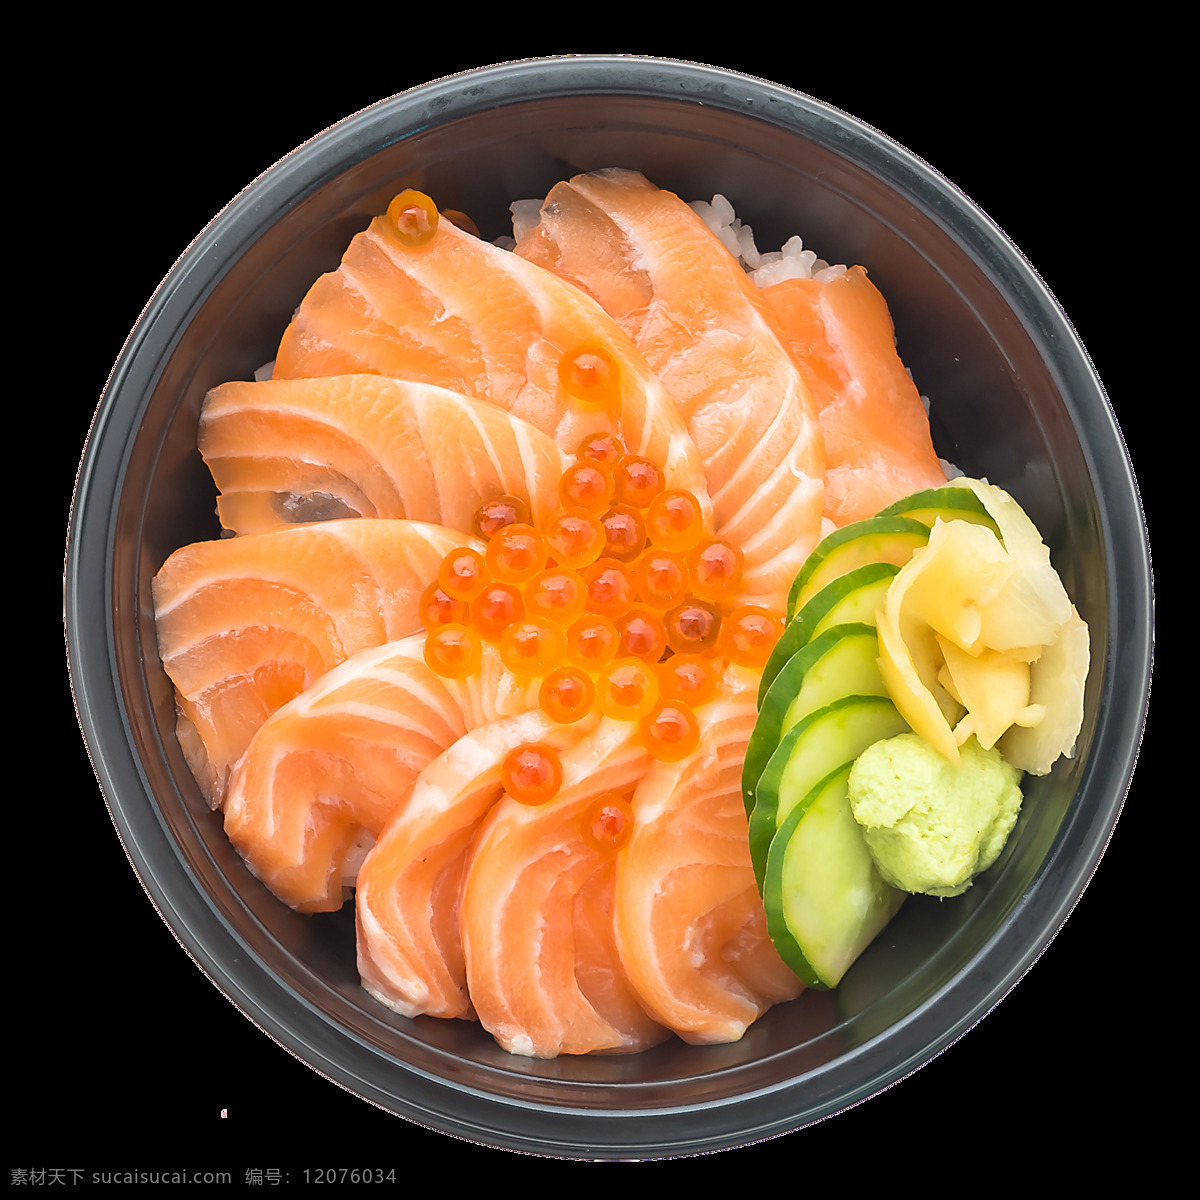 鲜美 三文鱼 日式 料理 美食 产品 实物 产品实物 日本美食 日式料理 鱼子酱 圆碗